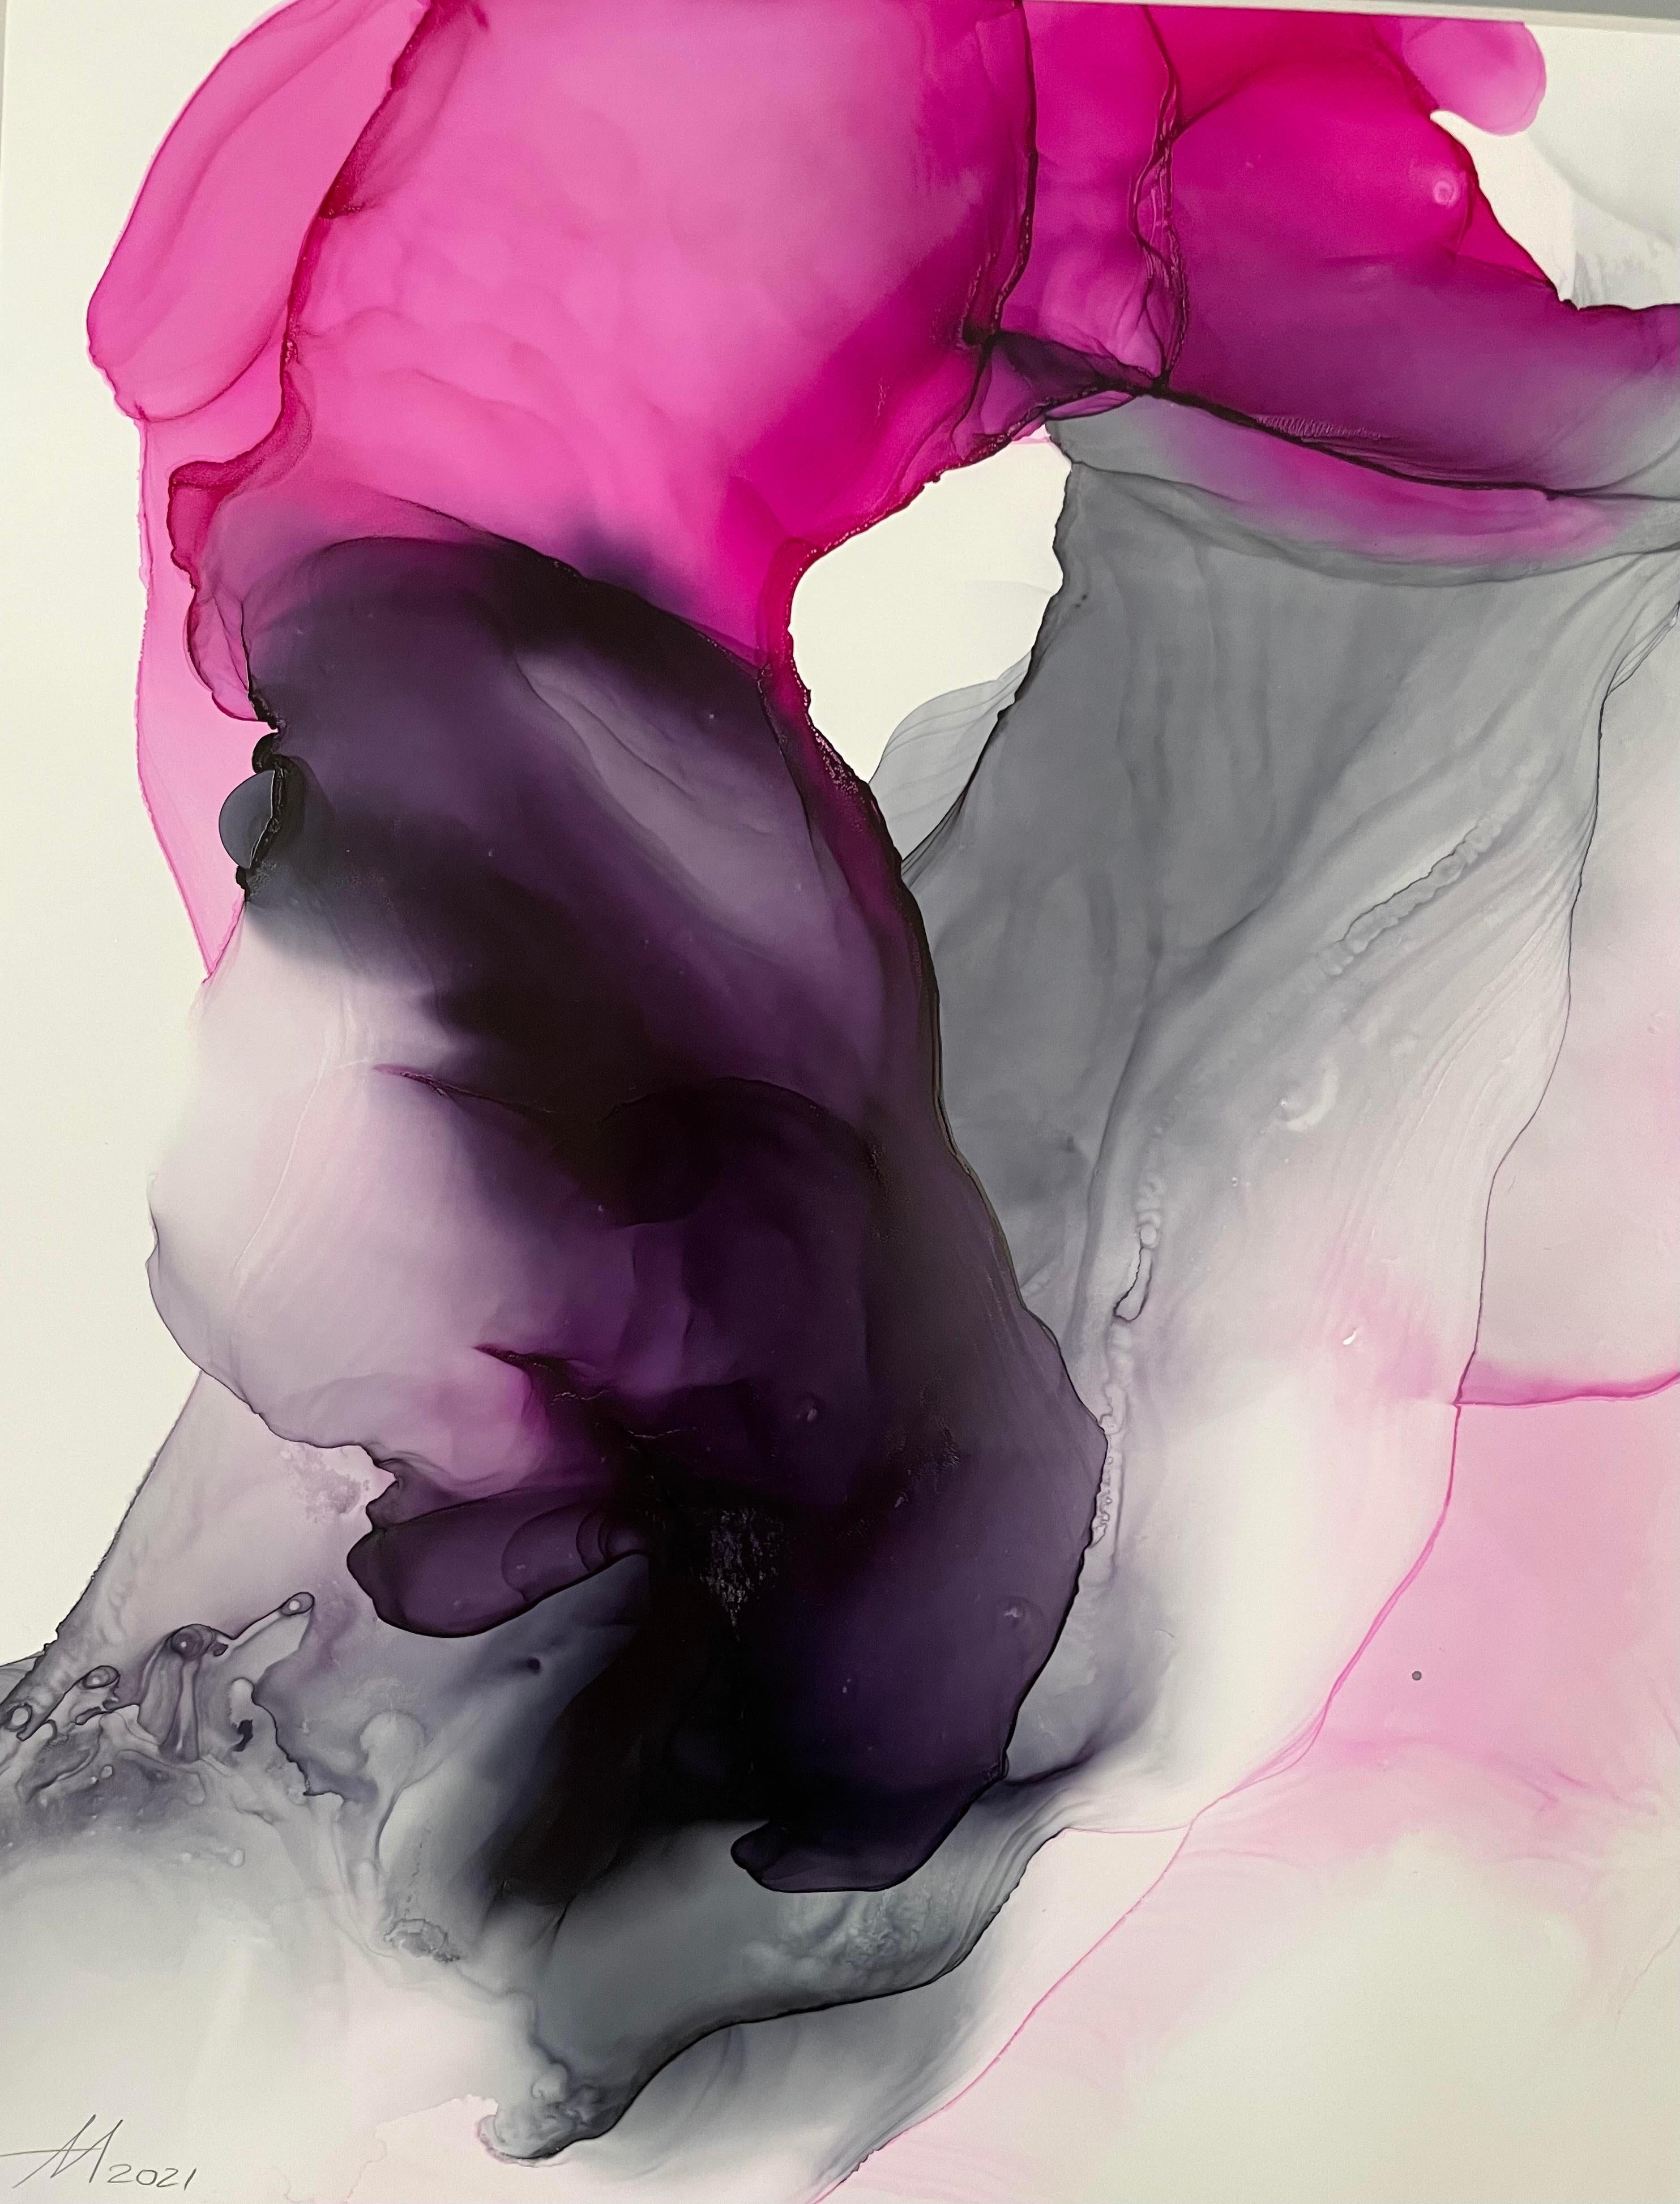 Innenarchitektur-Gemälde. Das Diptychon ist mit alkoholischer Tinte in rosa, lila, fuchsia, grau auf Yupo-Papier gemacht.
Jedes Werk ist 11 x 14 Zoll groß, gerahmt (schwarz) mit einer Styrolplatte auf einem Passepartoutkarton mit den Maßen 16 x 20